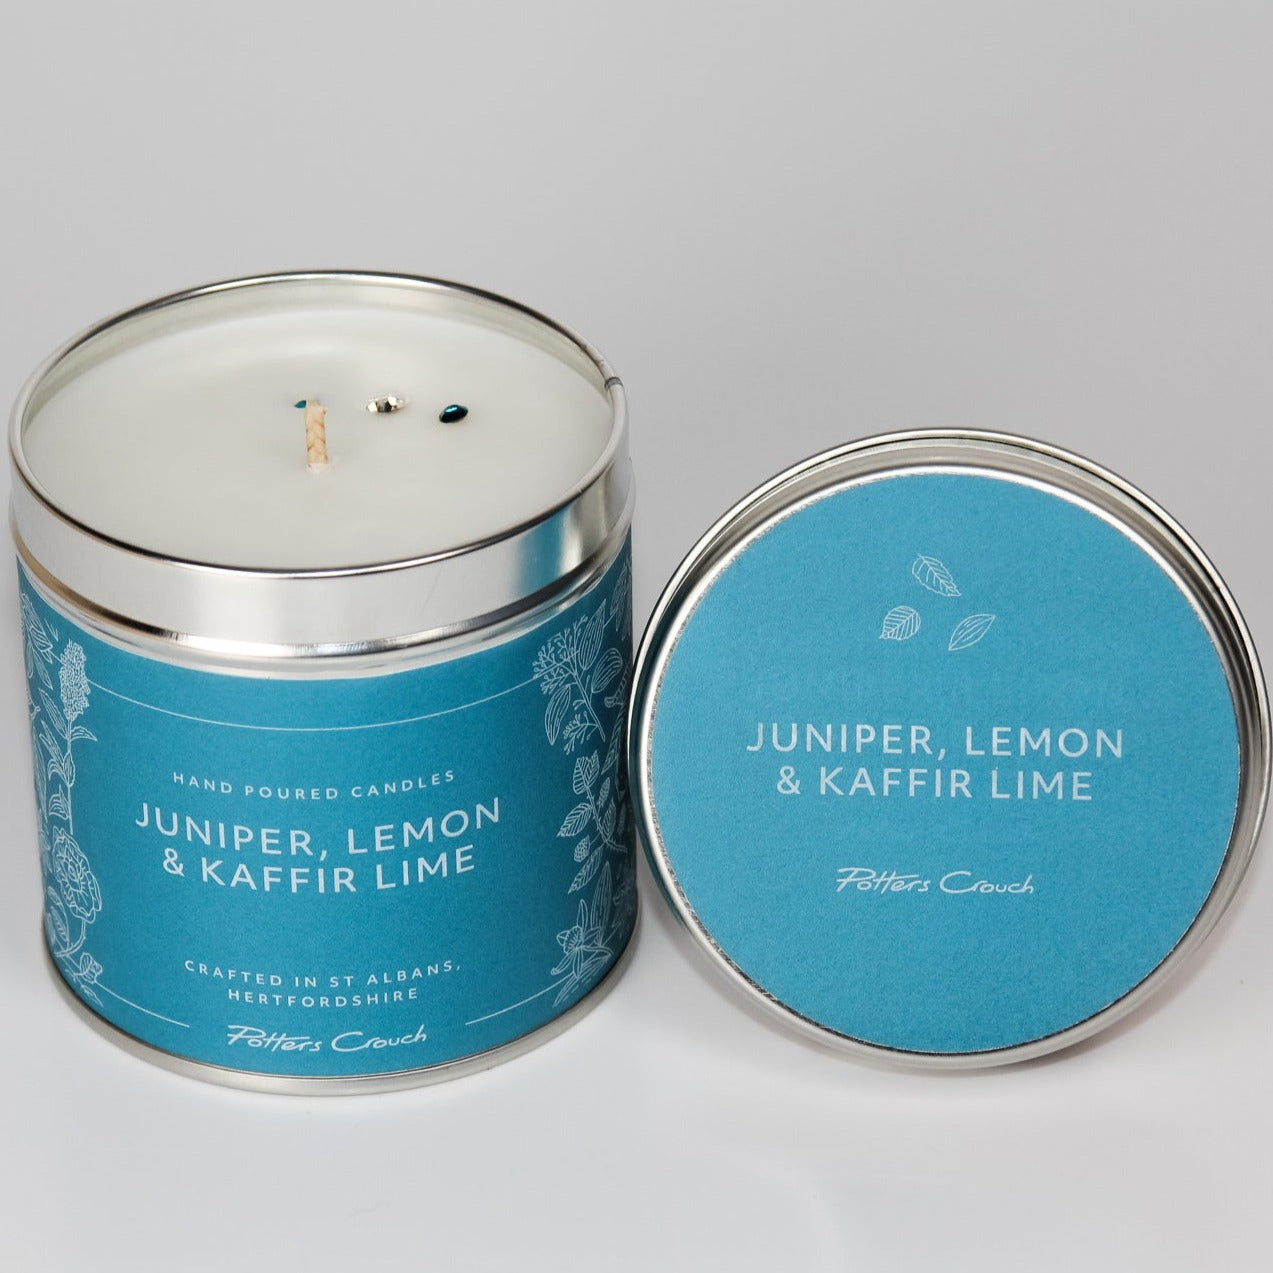 Uplift Wellness Candle with Juniper, Lemon & Kaffir Lime